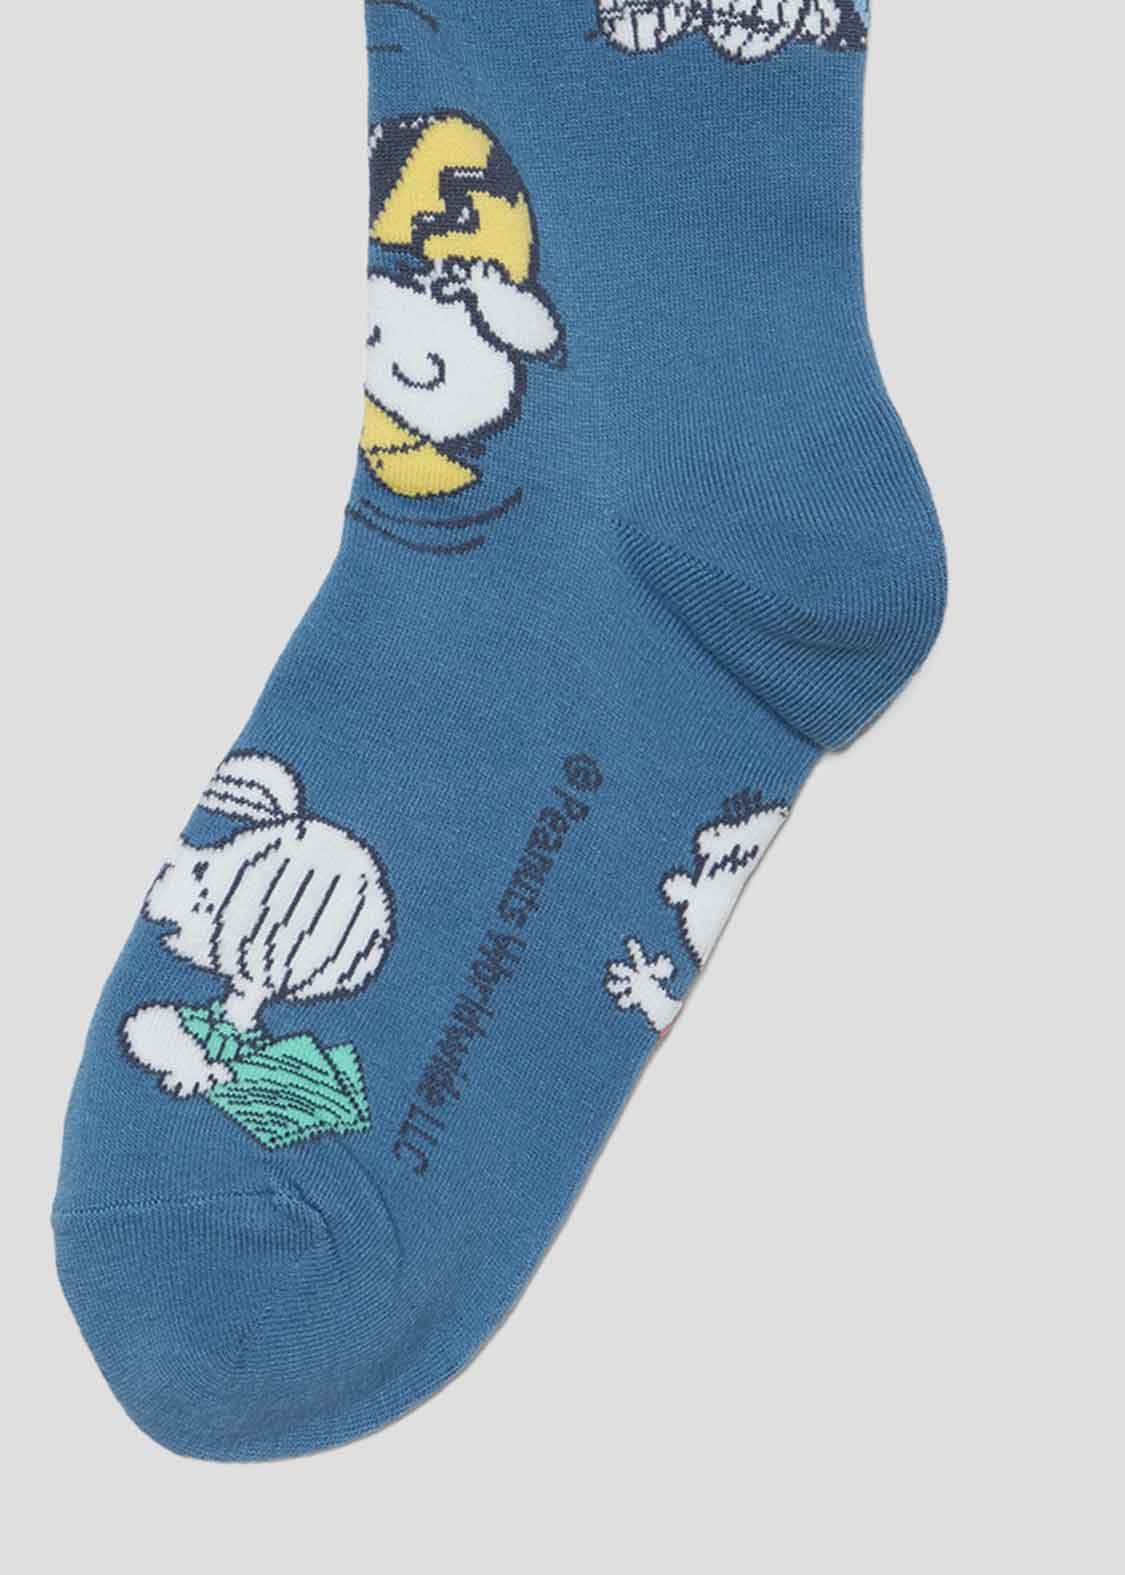 Peanuts Middle Socks (Peanuts_Peanuts Friends)